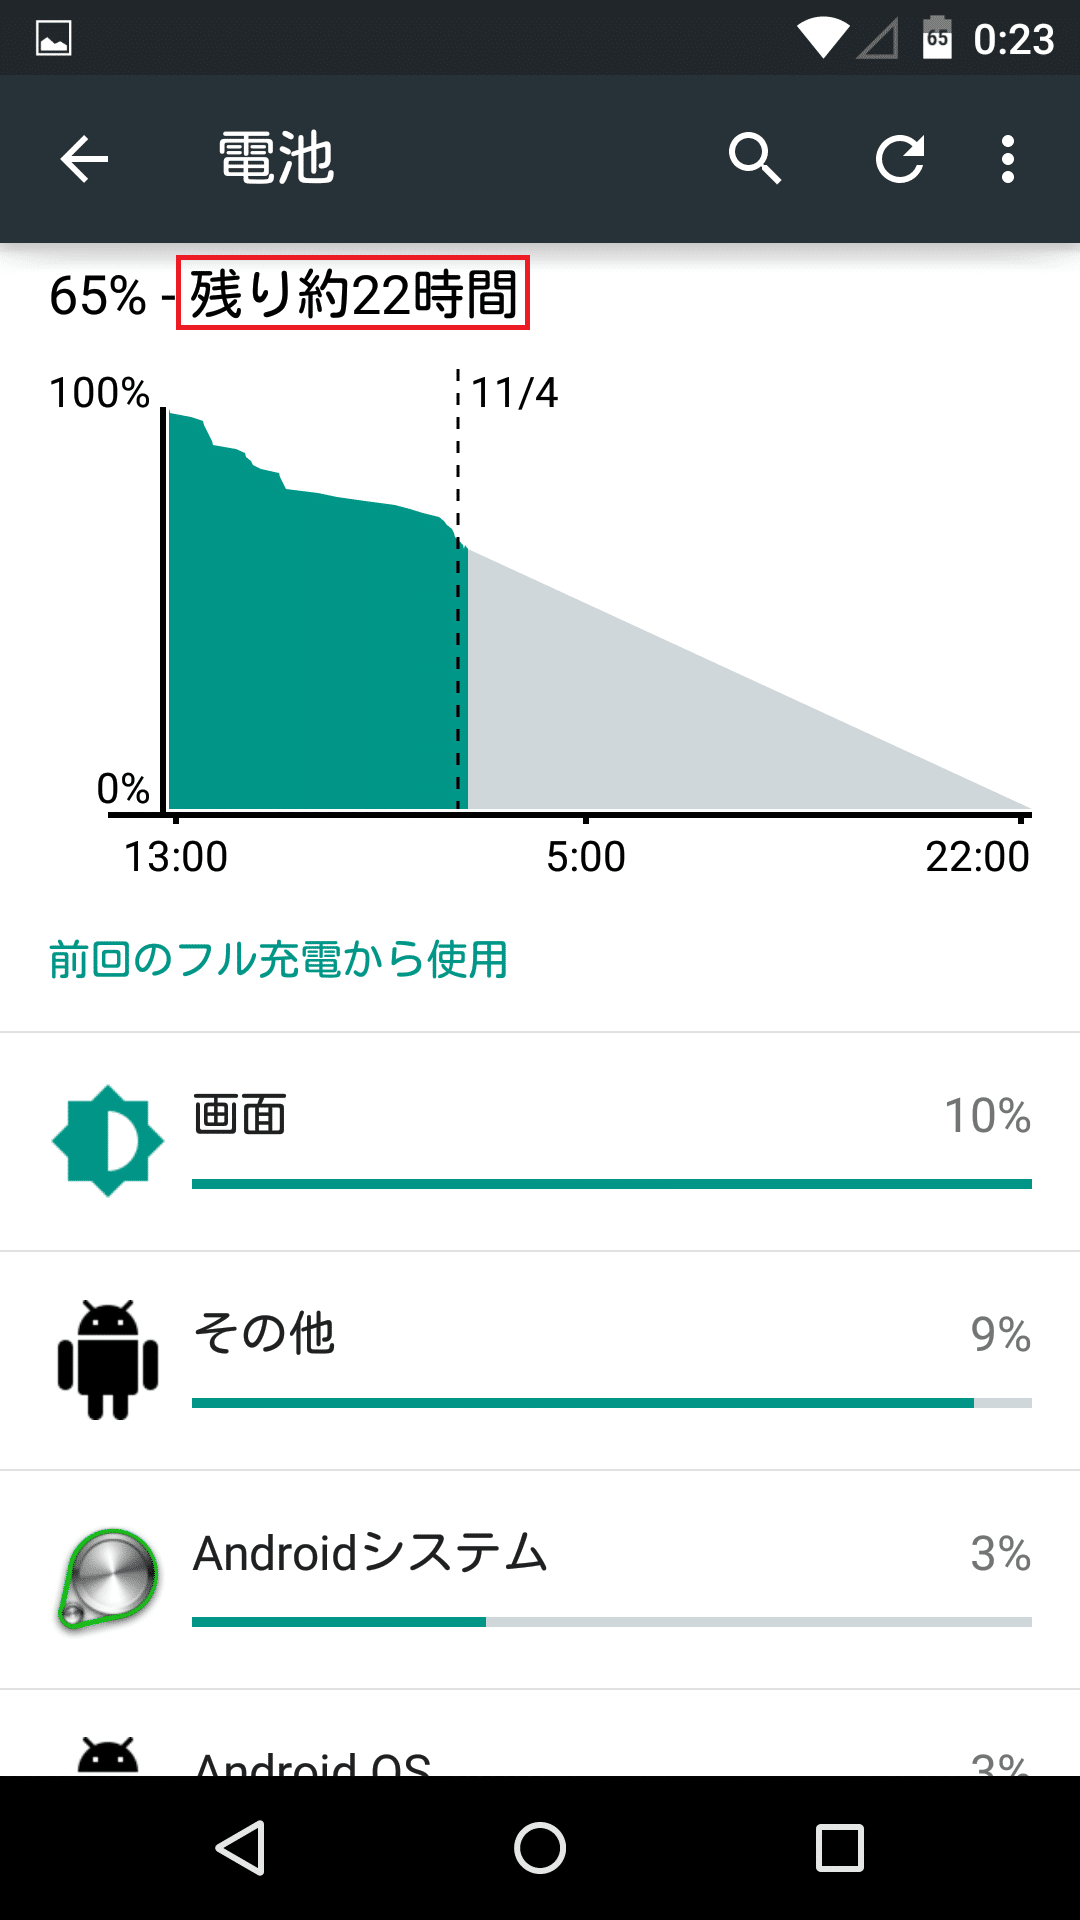 Android 5 0 Lollipopにはバッテリーが完全になくなるまでの目安時間と充電完了までの目安時間が表示される アンドロイドラバー